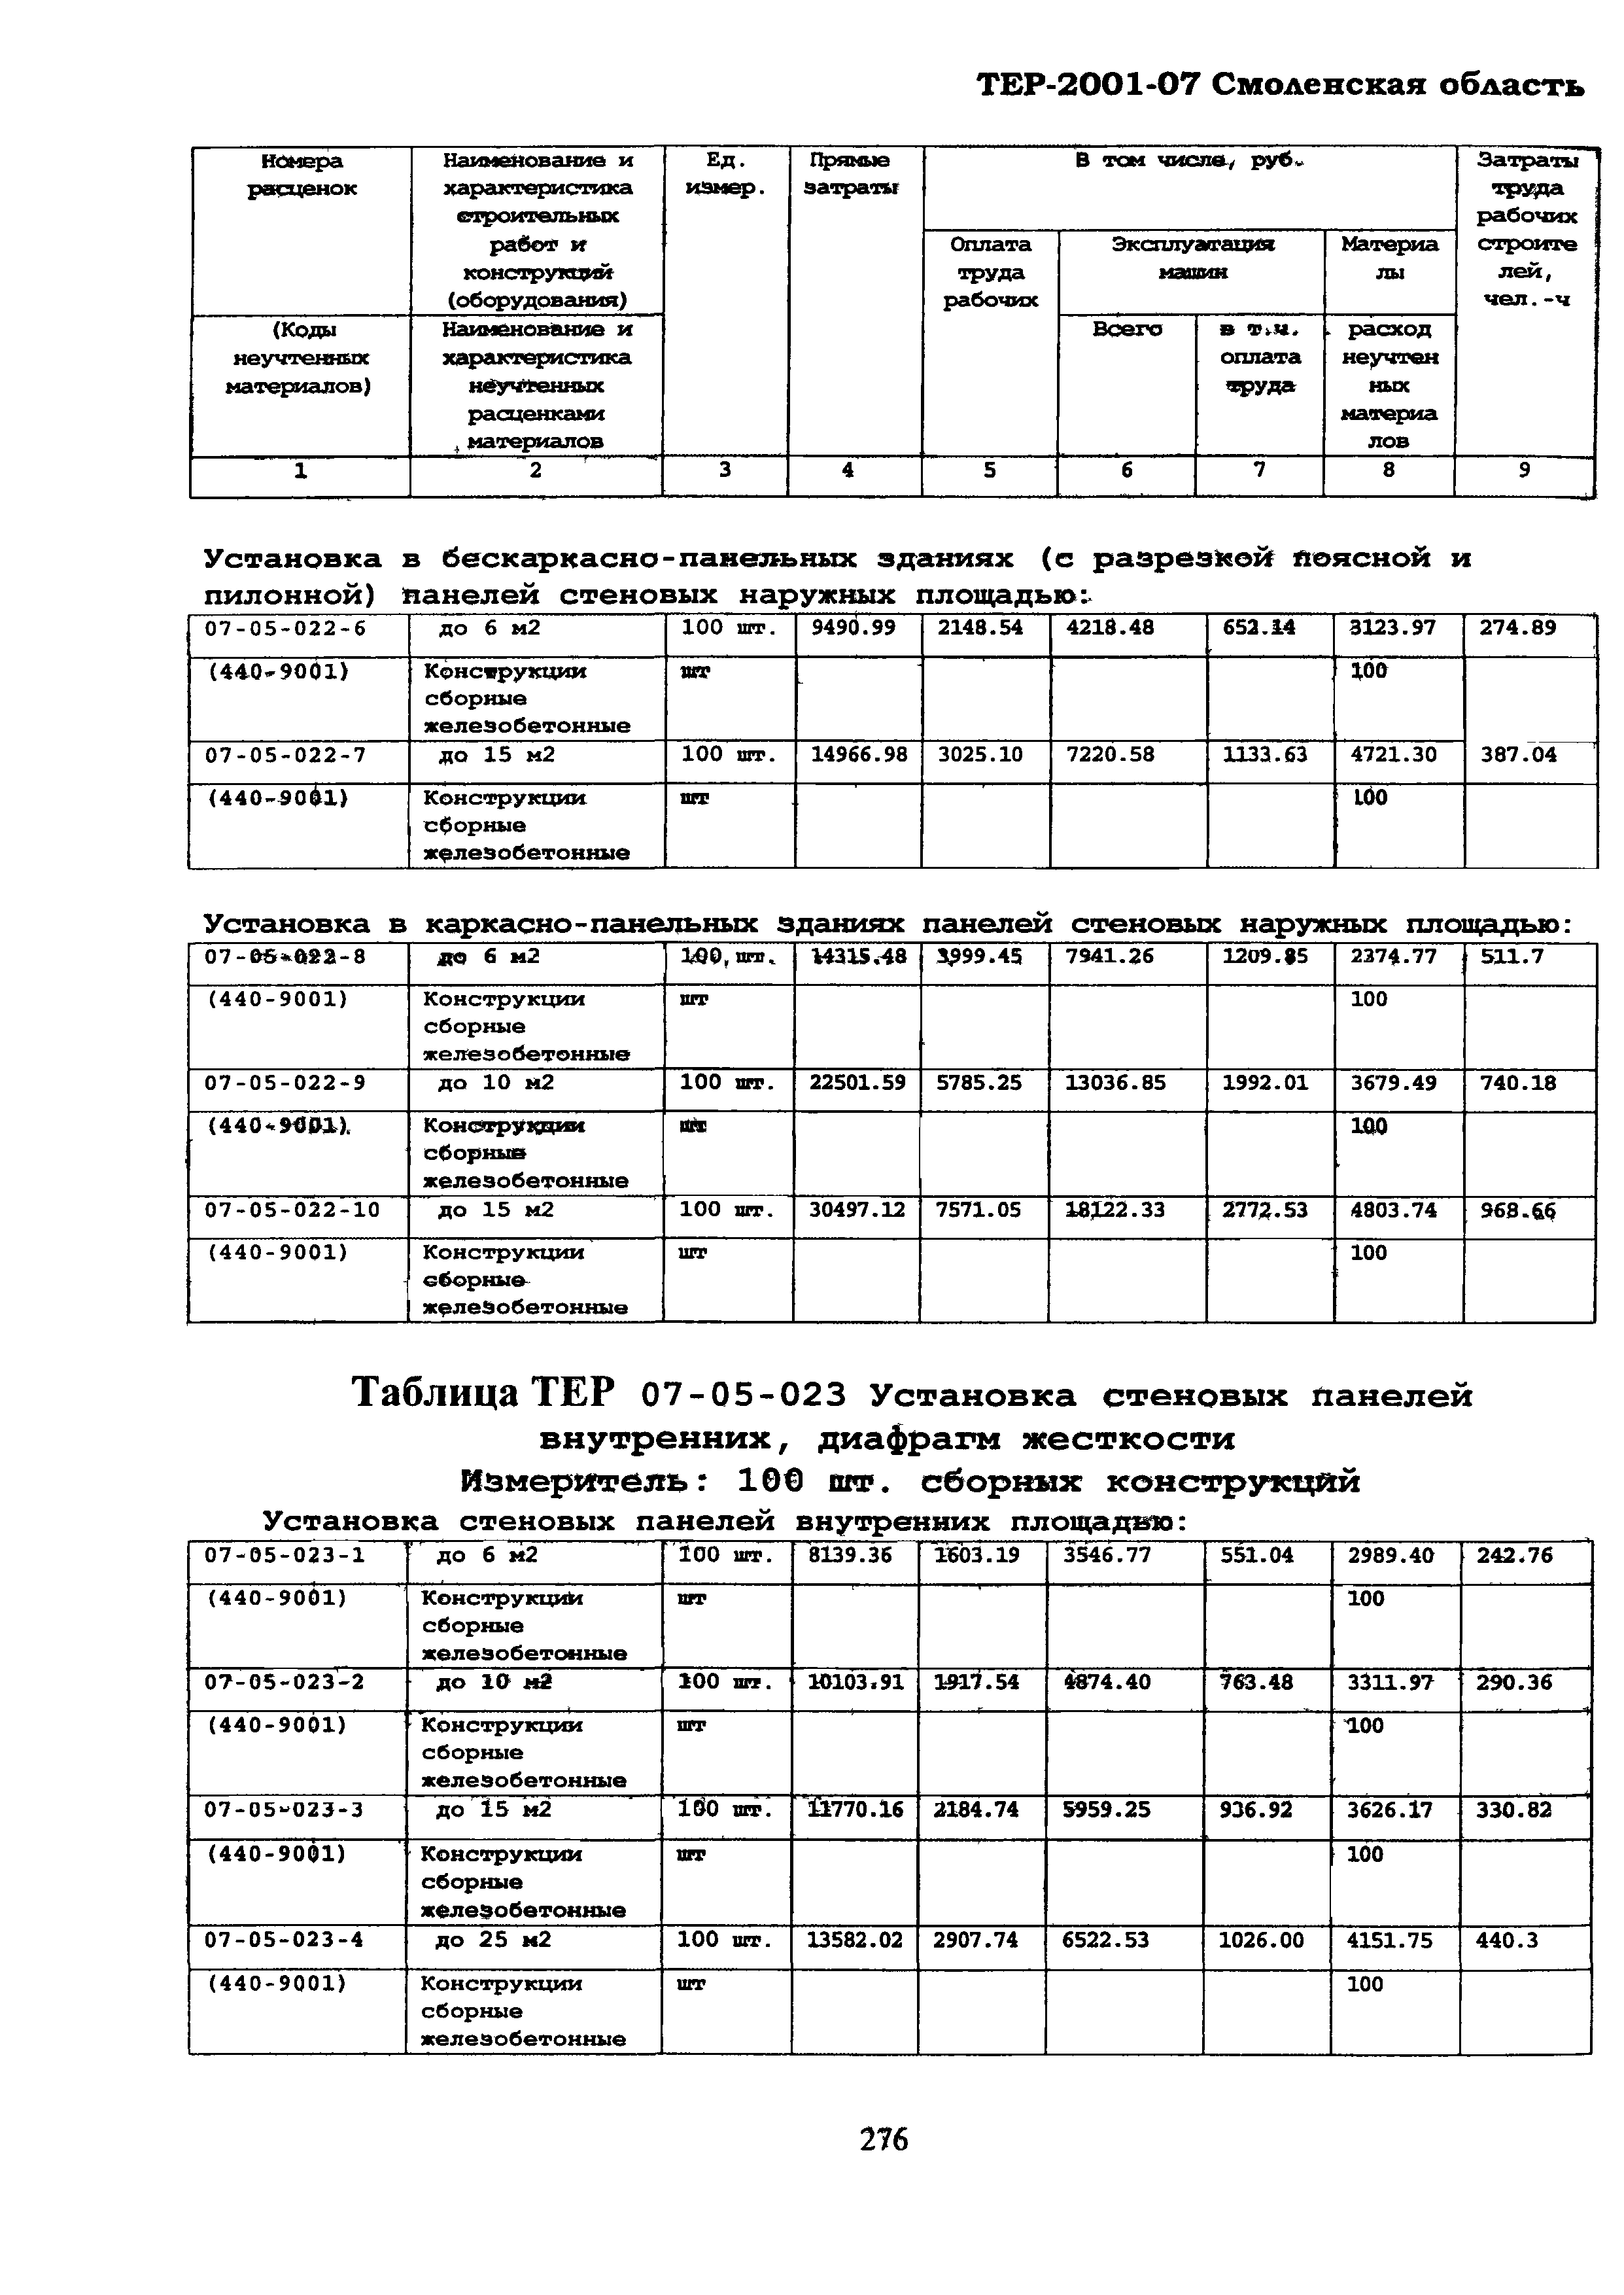 ТЕР Смоленской обл. 2001-07